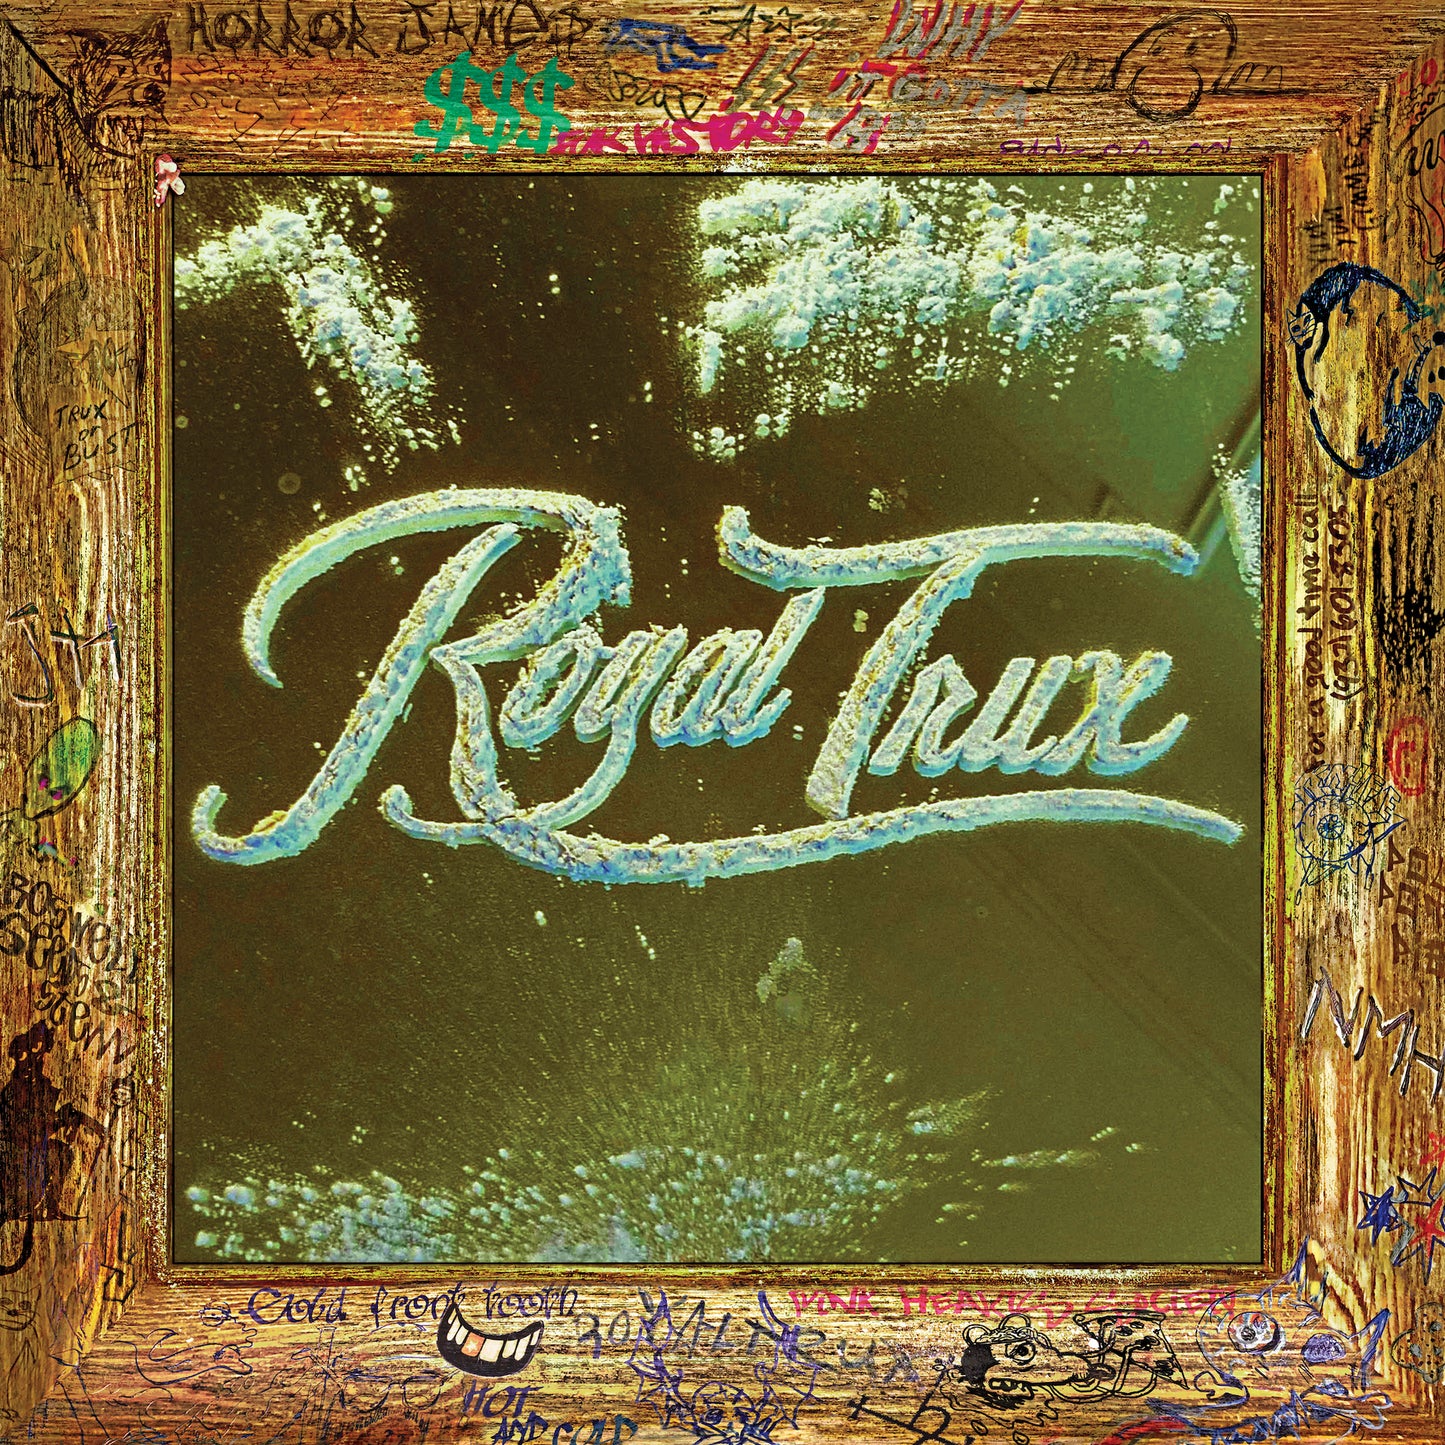 ROYAL TRUX - "WHITE STUFF" LP